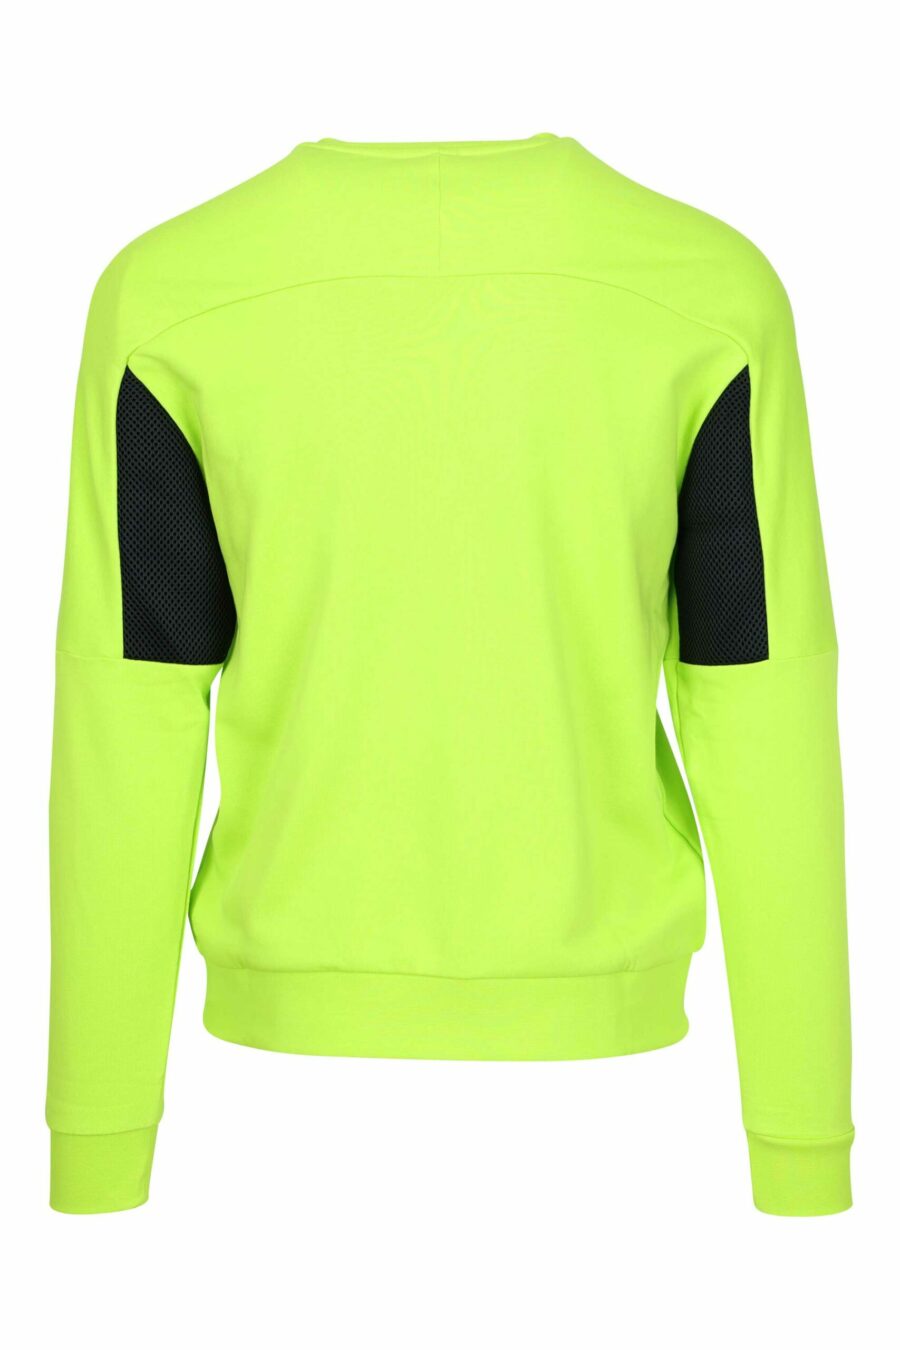 Lindgrünes Sweatshirt mit "lux identity"-Mini-Logo auf einfarbigem Band - 8057970709947 1 skaliert